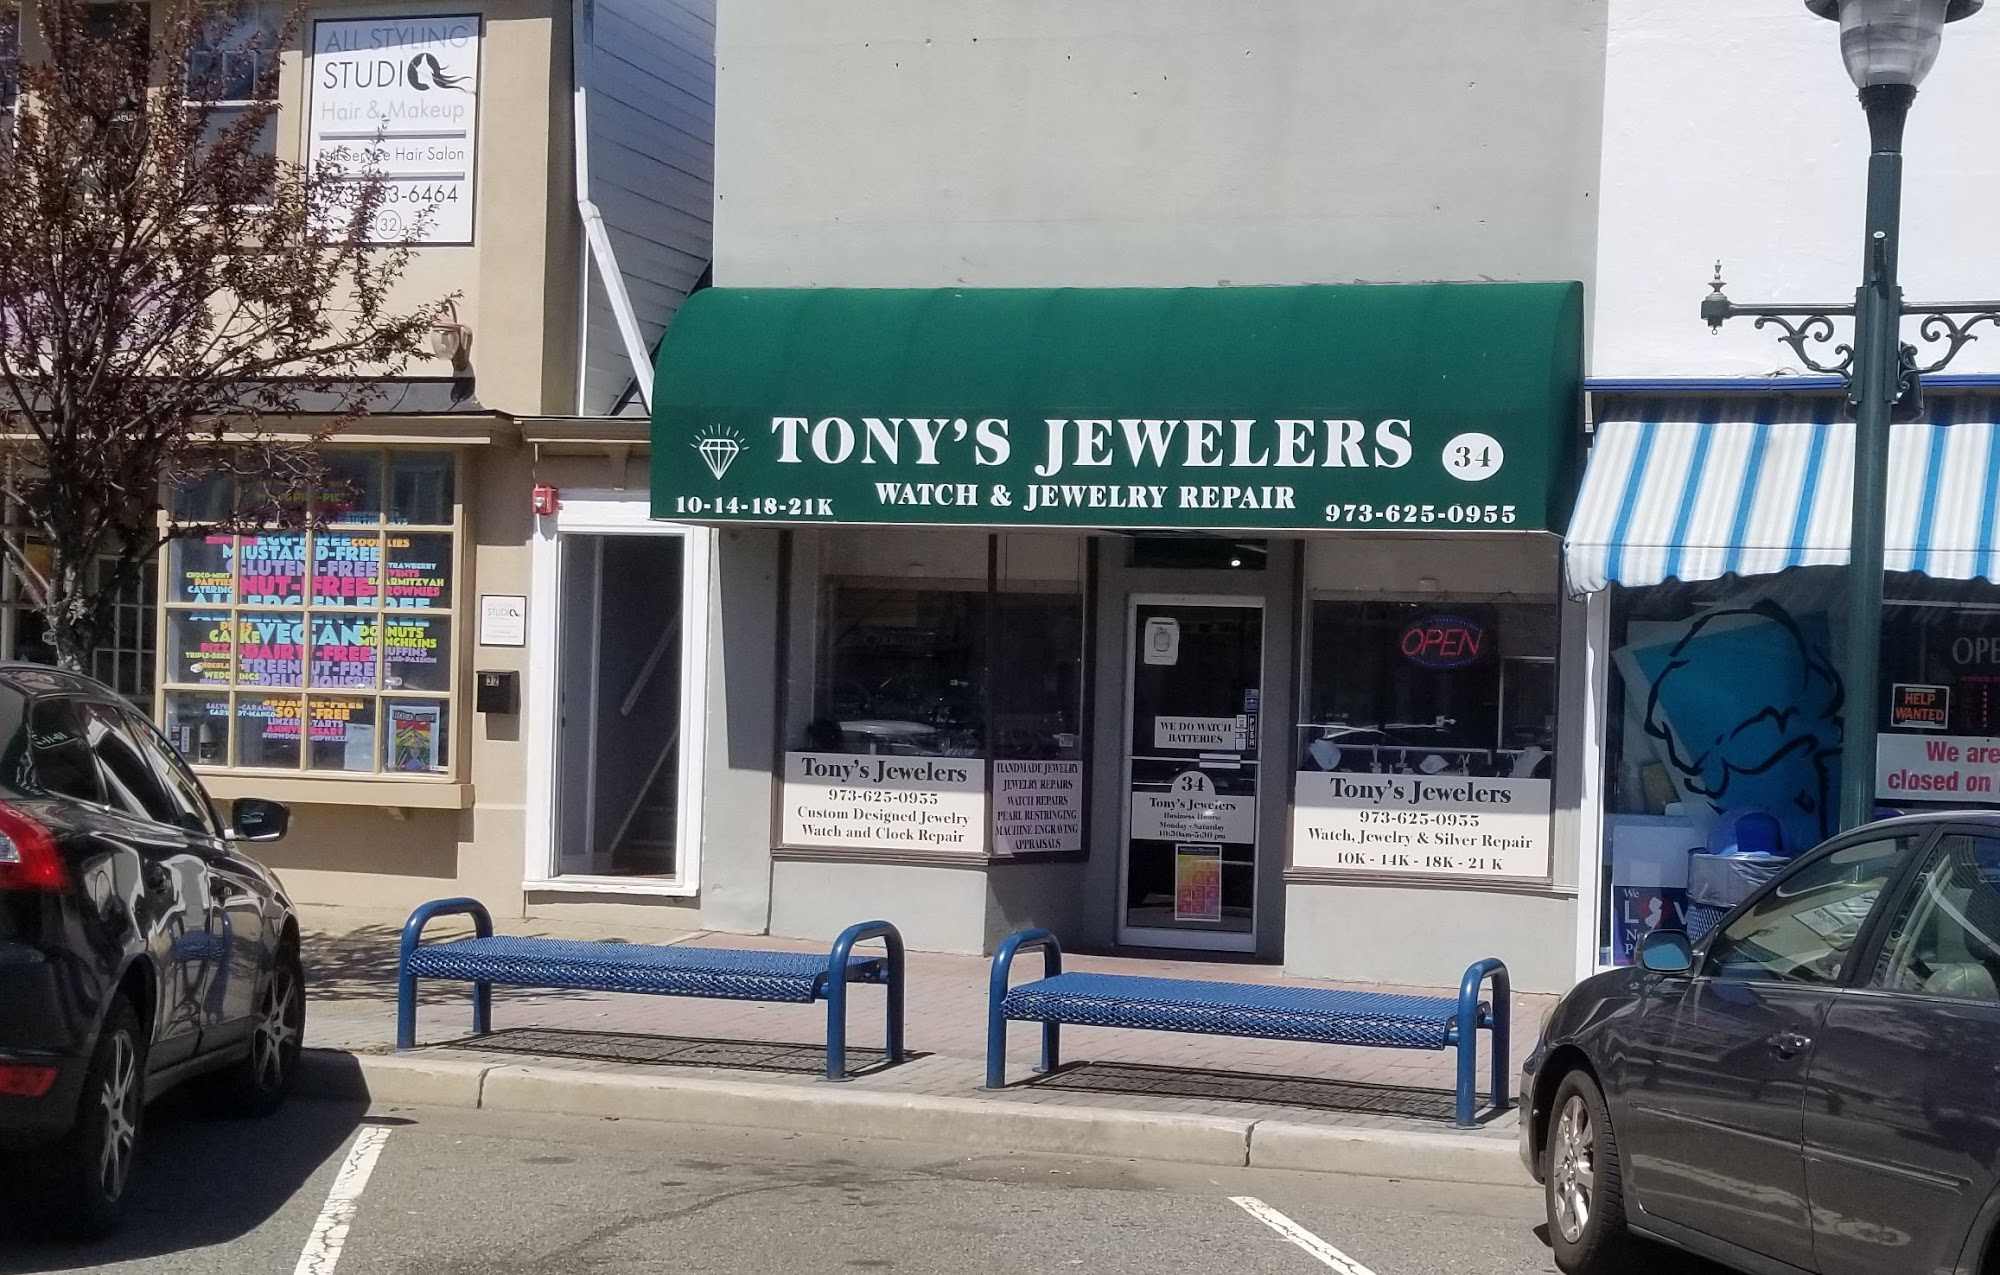 Tony's Jewelers